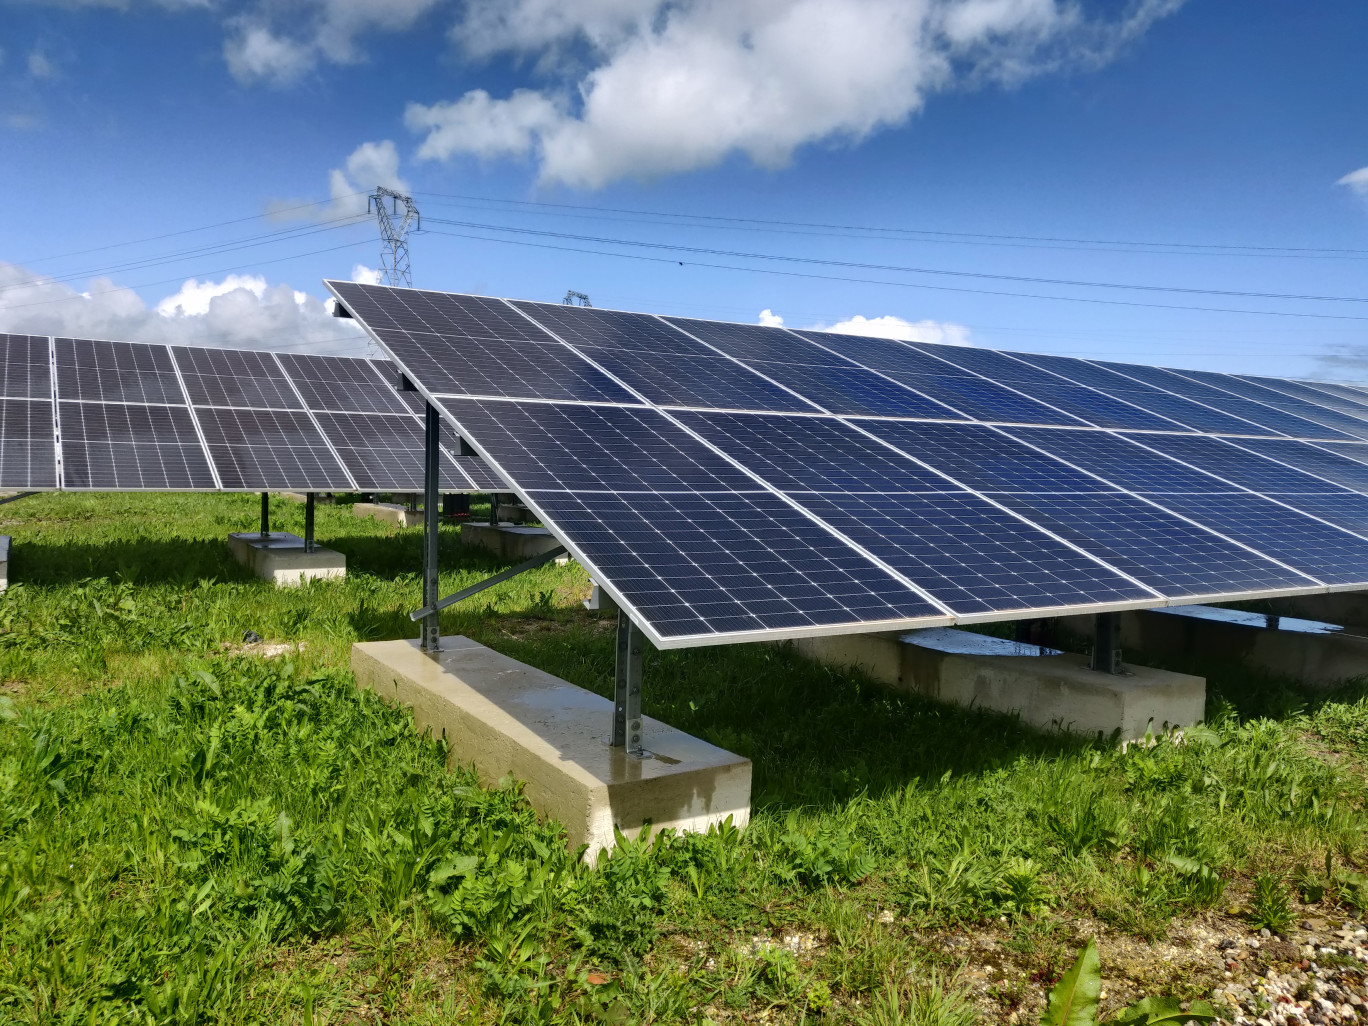 La centrale solaire Vauvoix s’étend sur 18 hectares et compte 20 000 panneaux photovoltaïques. (c)Aletheia Press/DLP